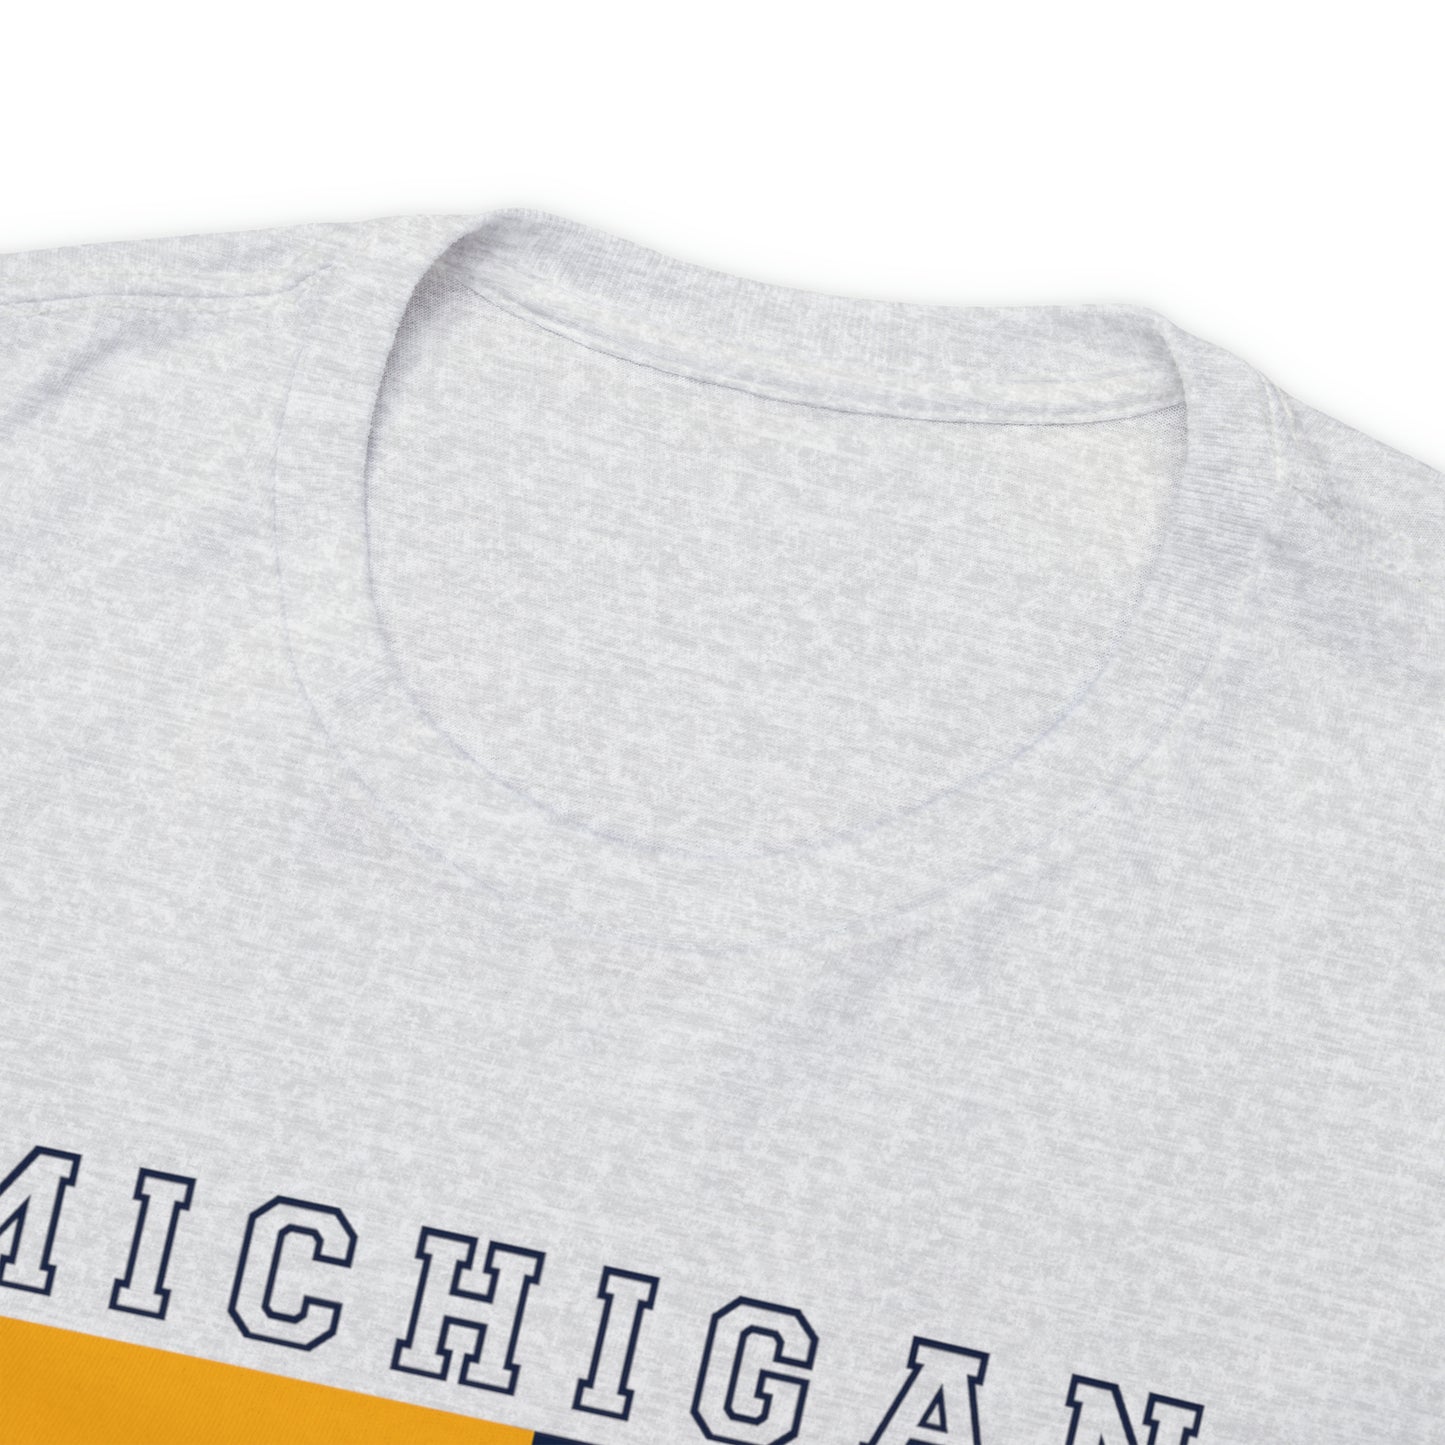 Michigan Football Tshirt